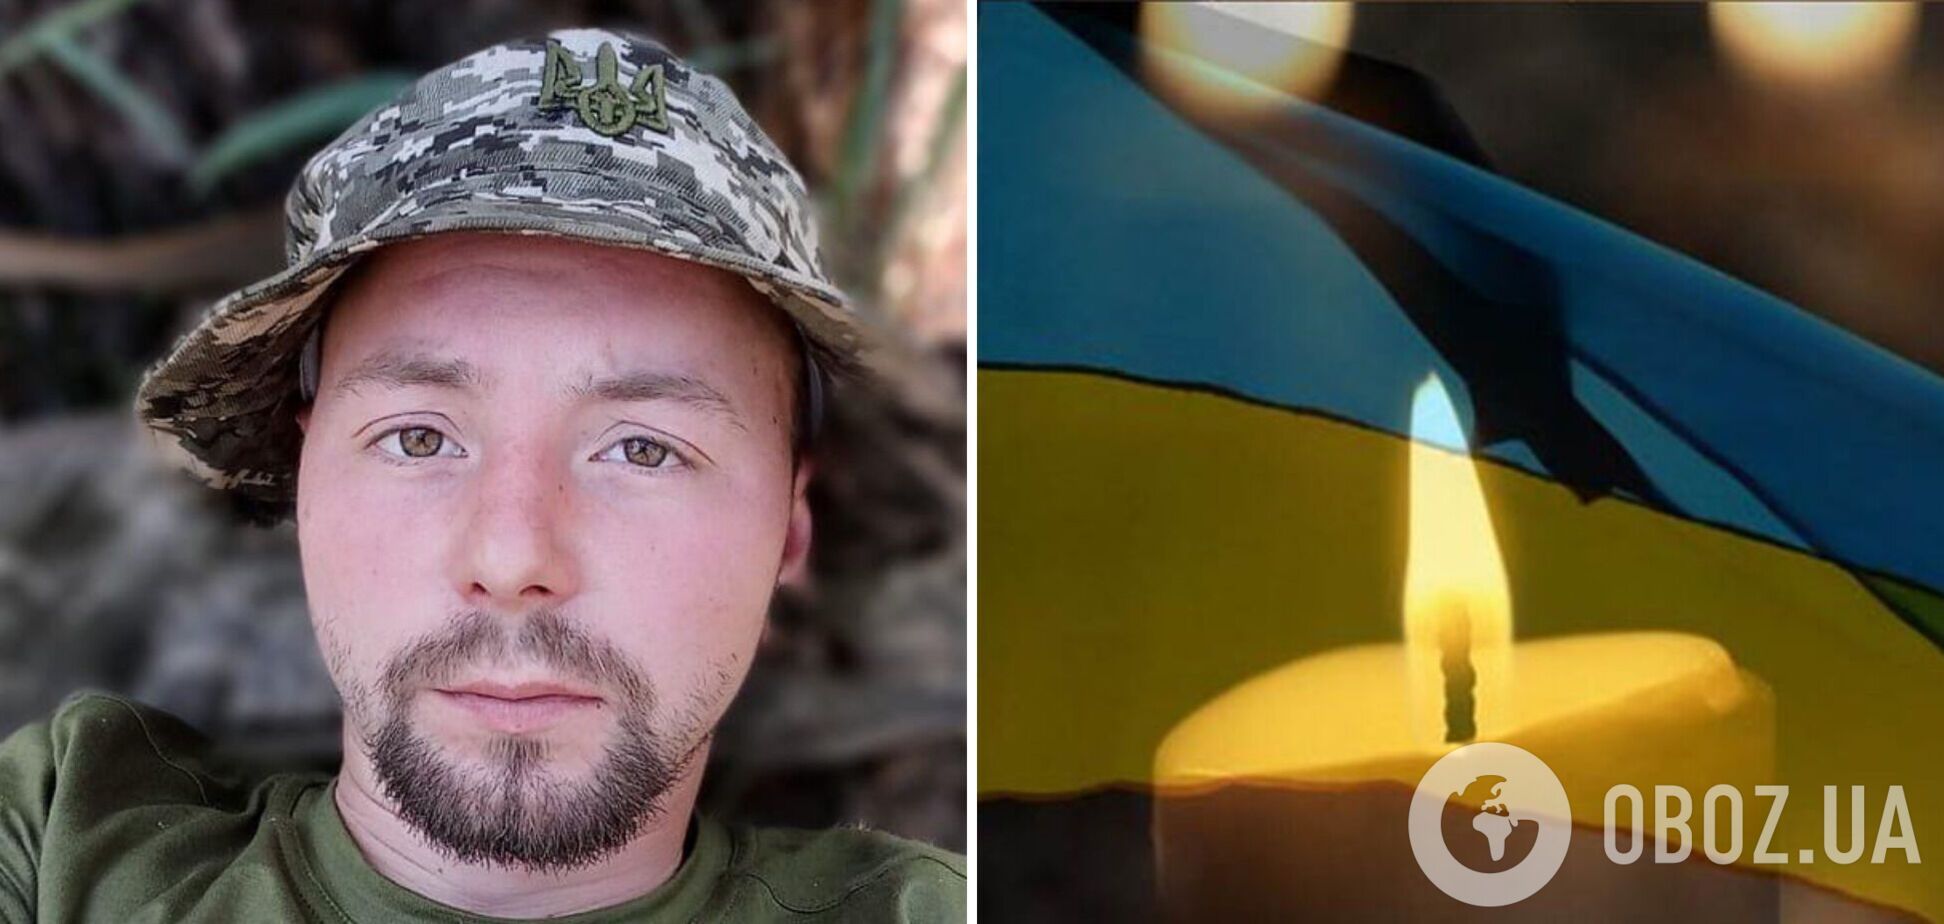 Попал под обстрел вражеского дрона: в Луганской области погиб разведчик из Канева Руслан Анисимов. Фото